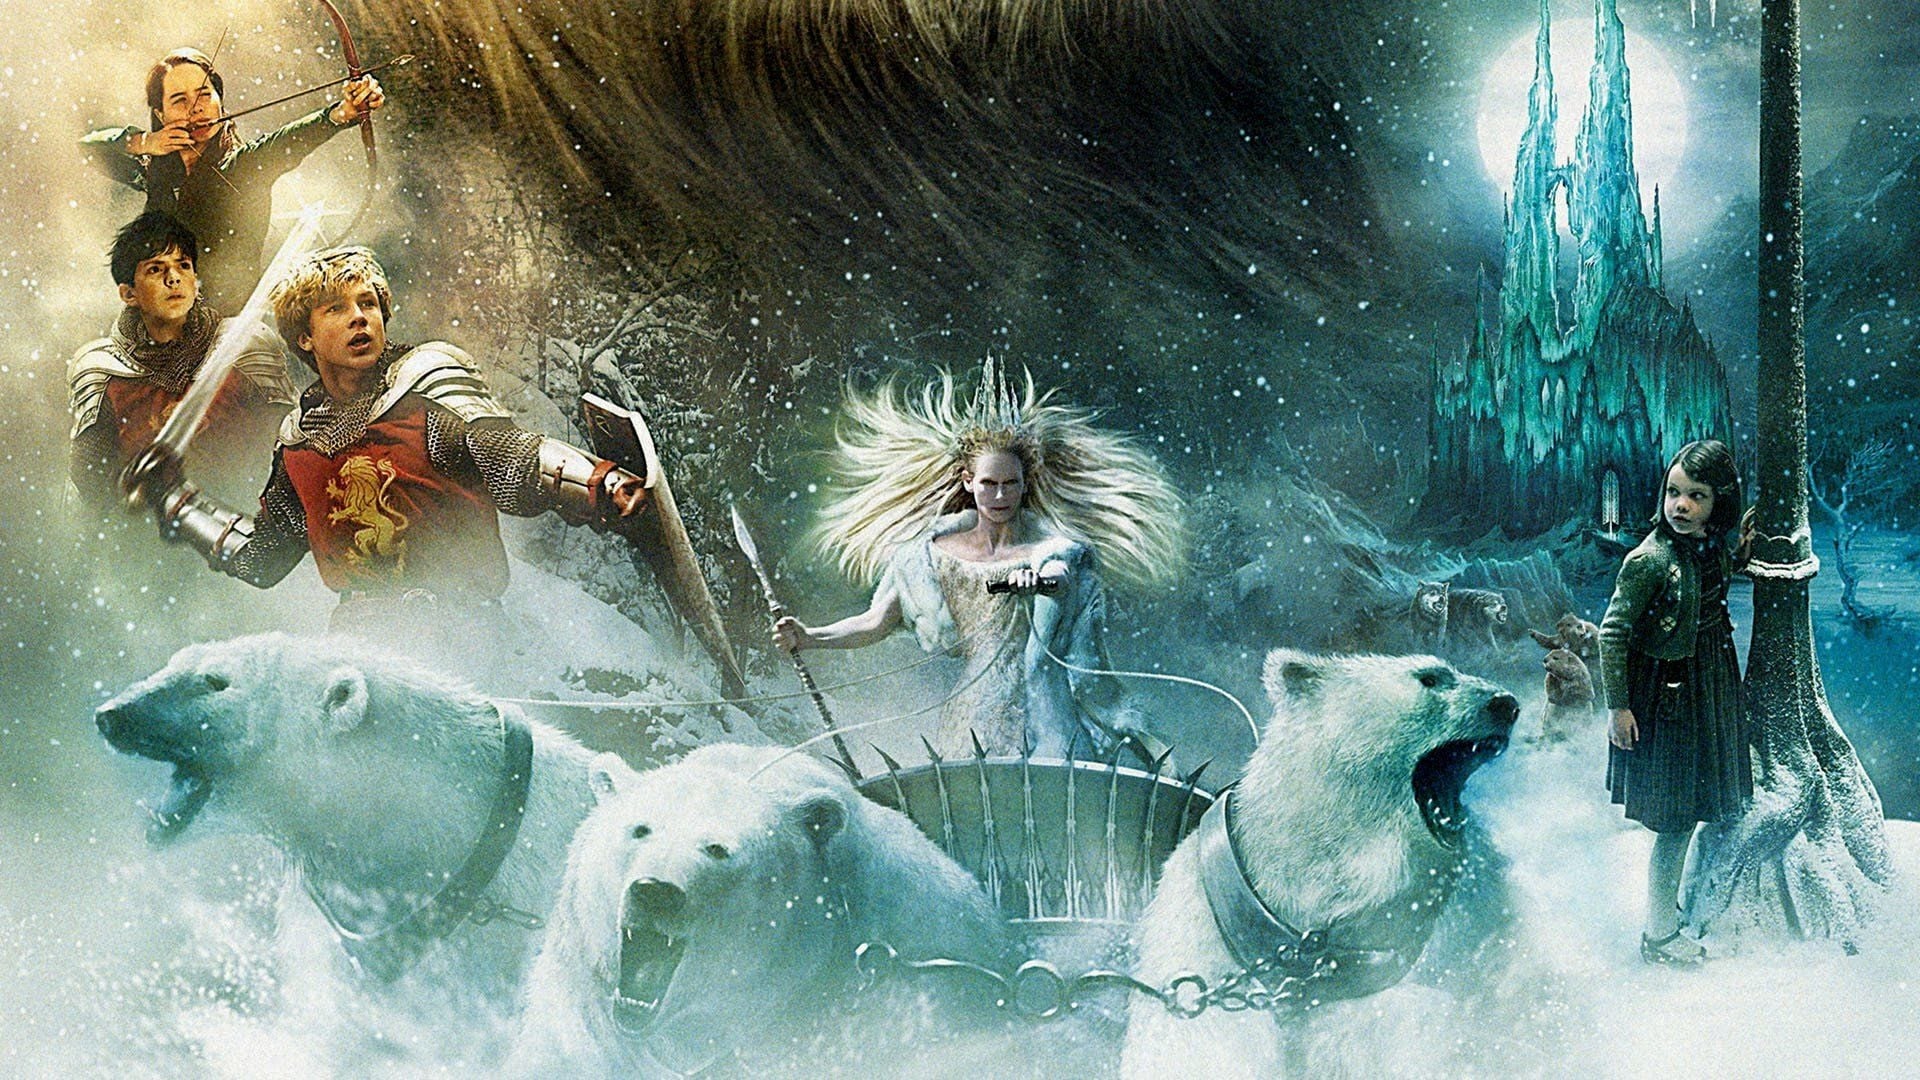 Cronicile din Narnia: Leul, vrăjitoarea și dulapul (2005)